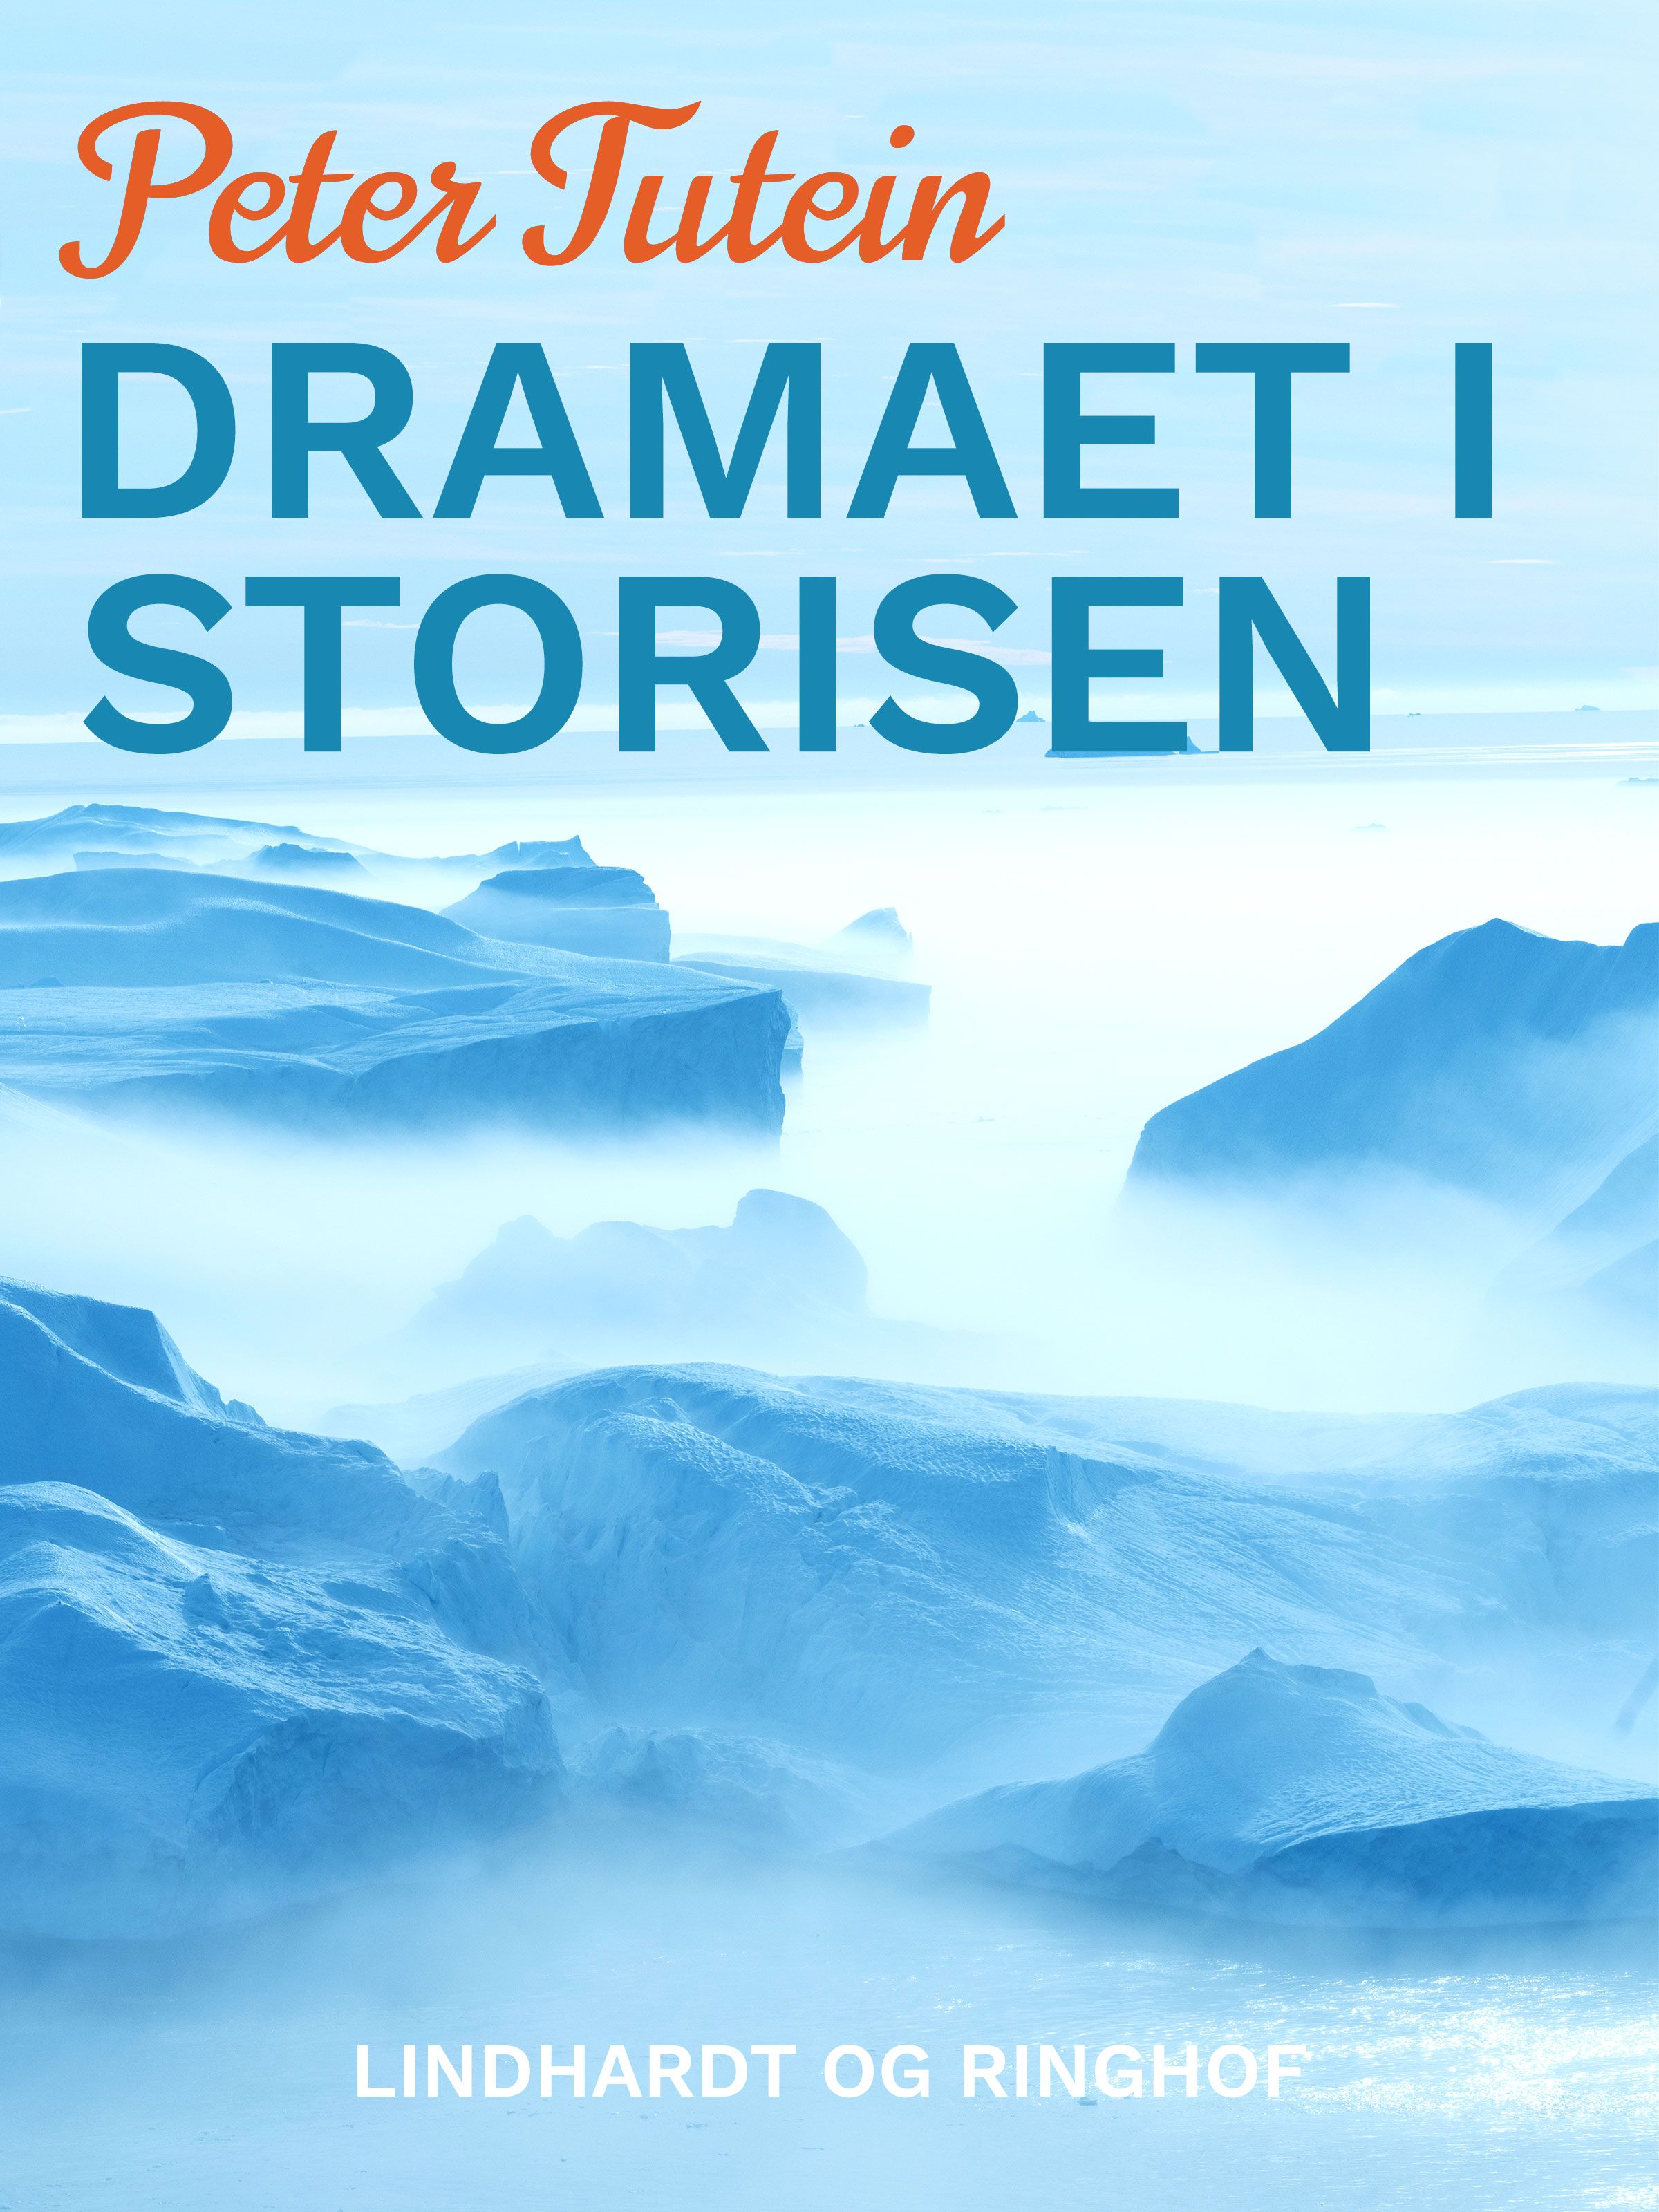 Dramaet i storisen, e-bok av Peter Tutein